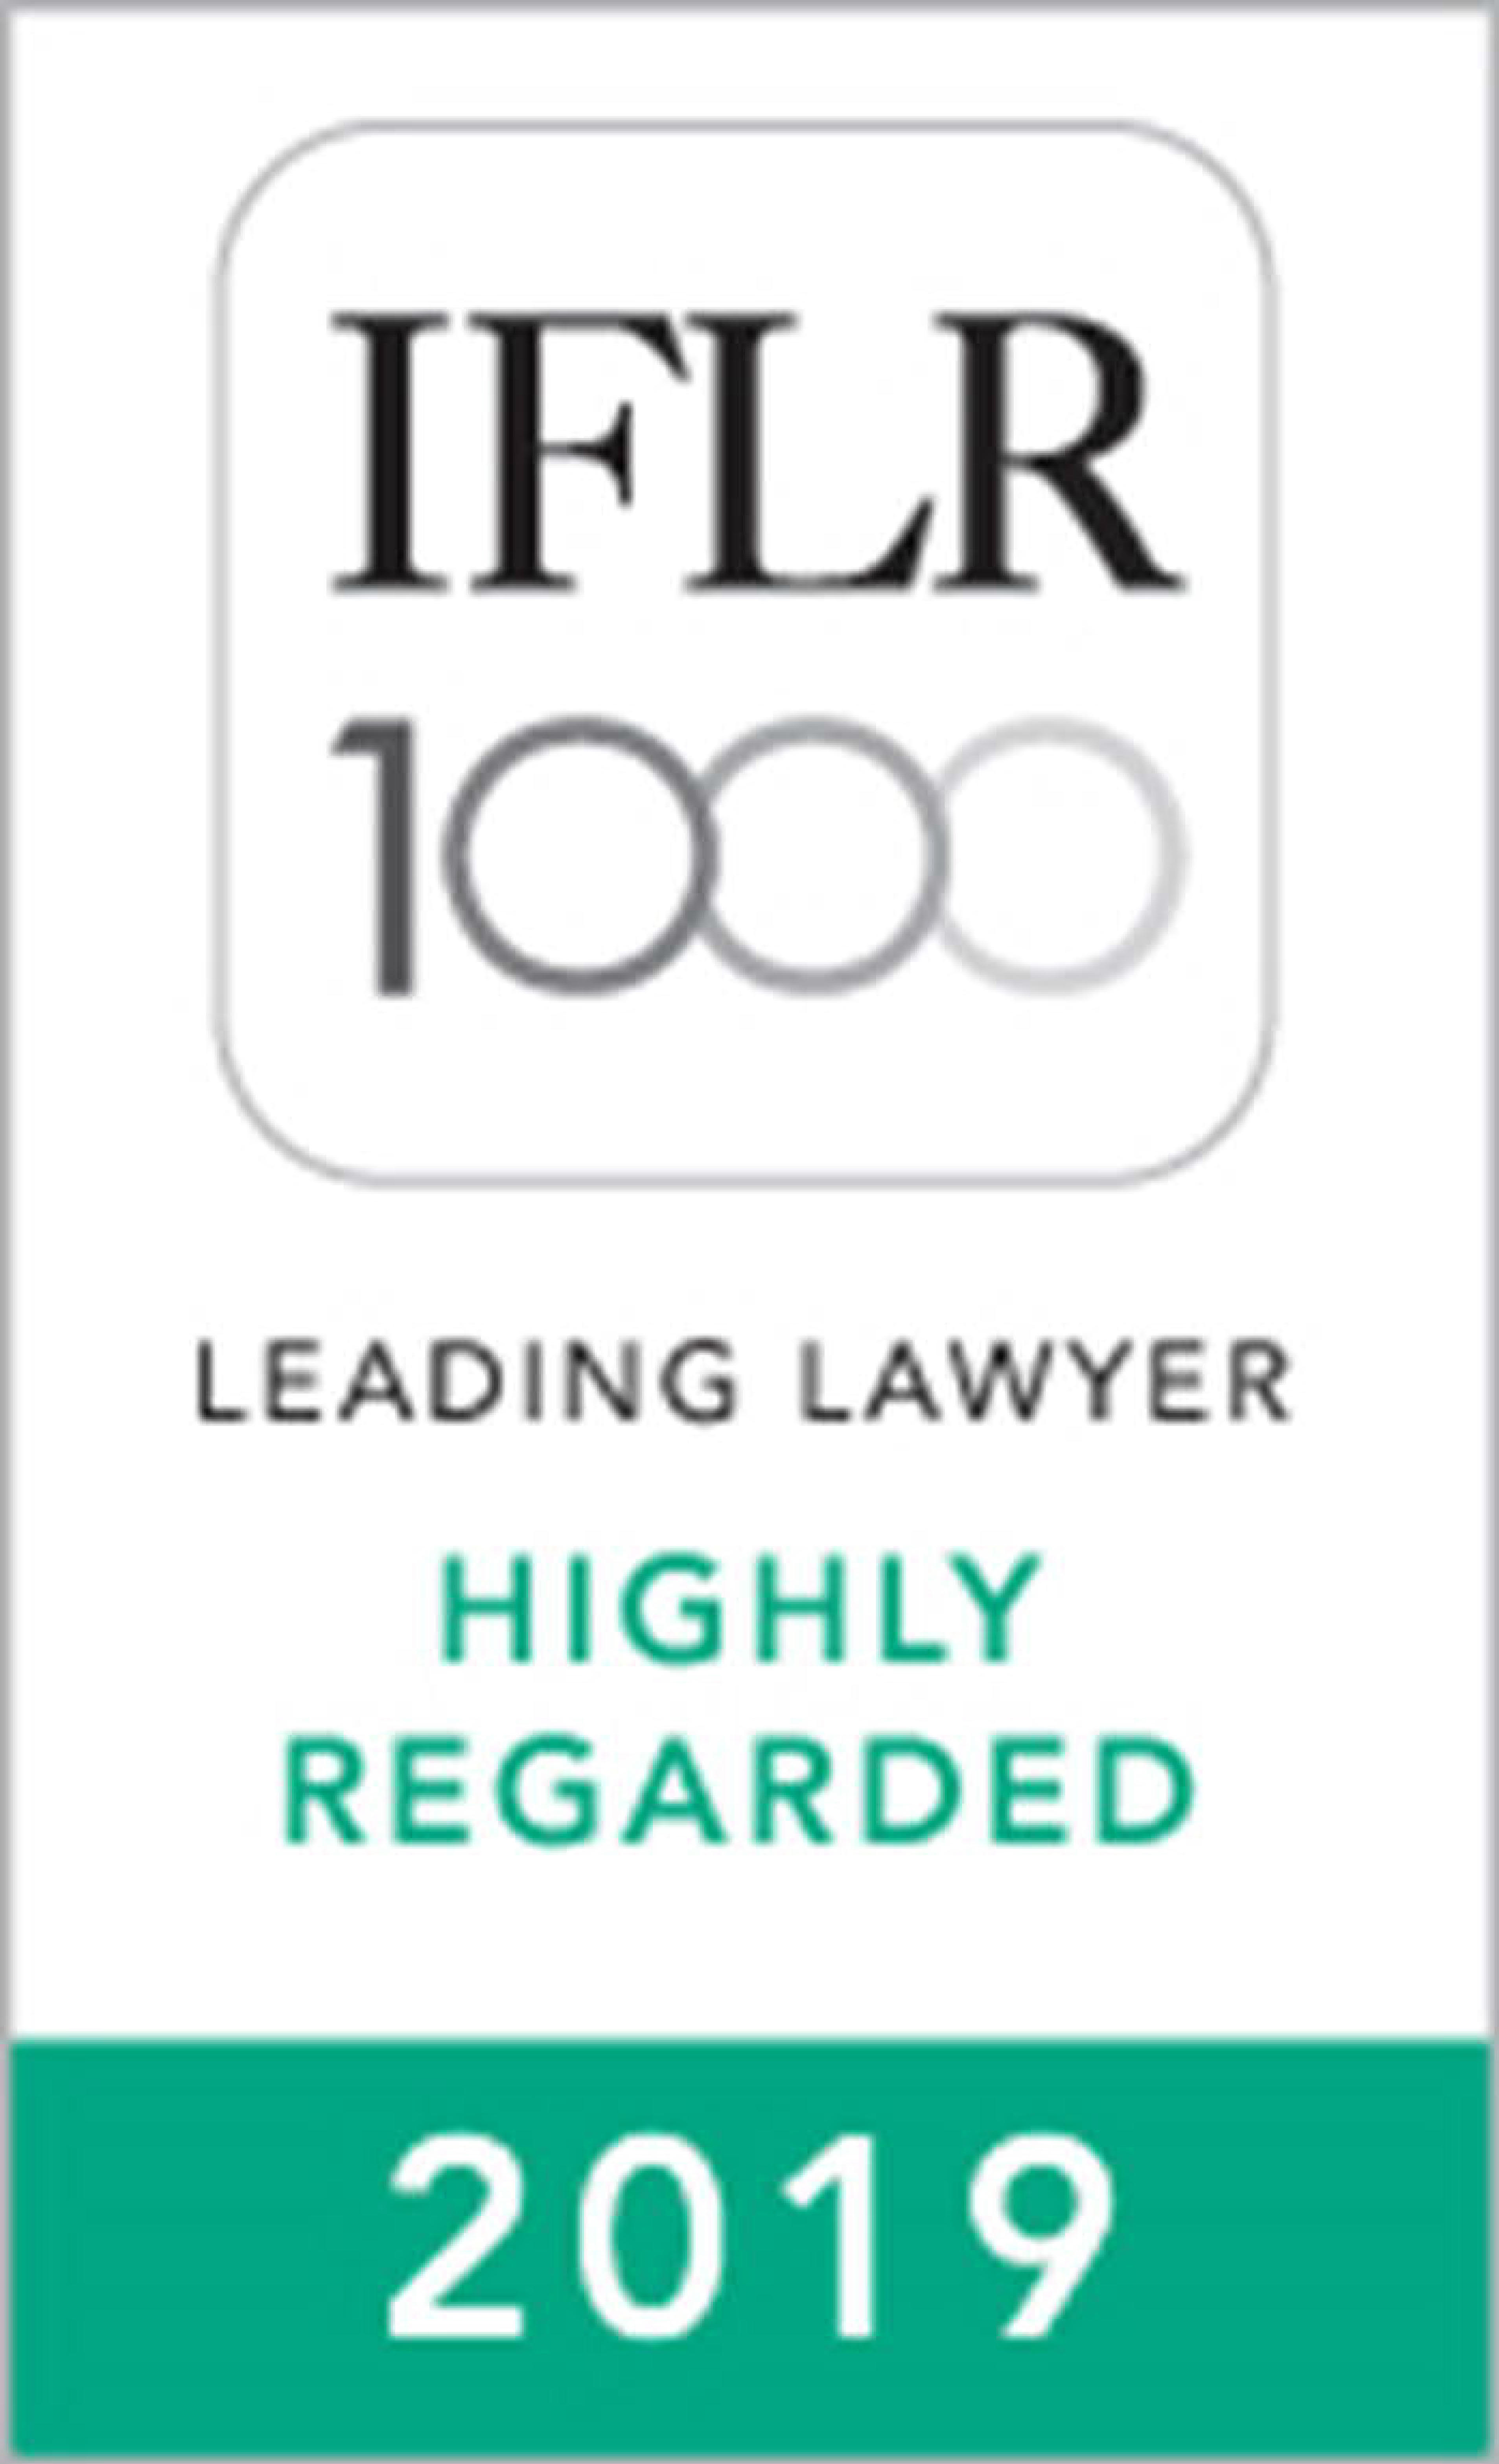 2015 至 2019年《国际金融法律评论 1000》(IFLR1000) 亚太区高度推崇领先律师：金融及企业法